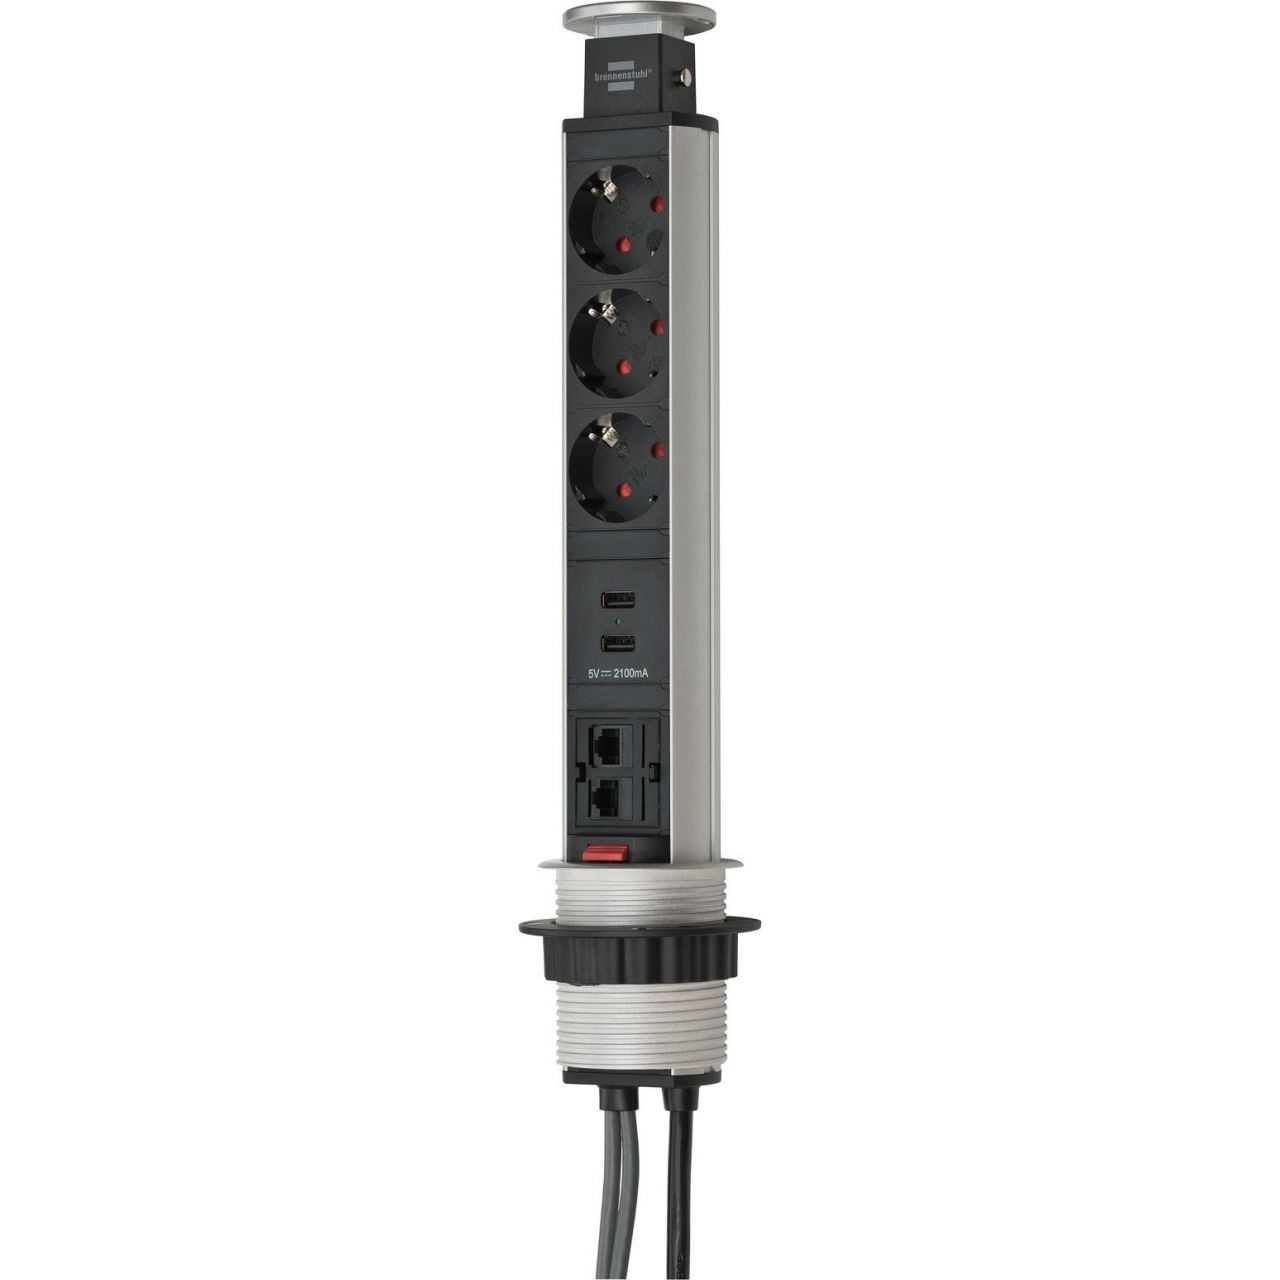 Base múltiple retráctil para mesas Tower Power con puertos USB y conexión LAN